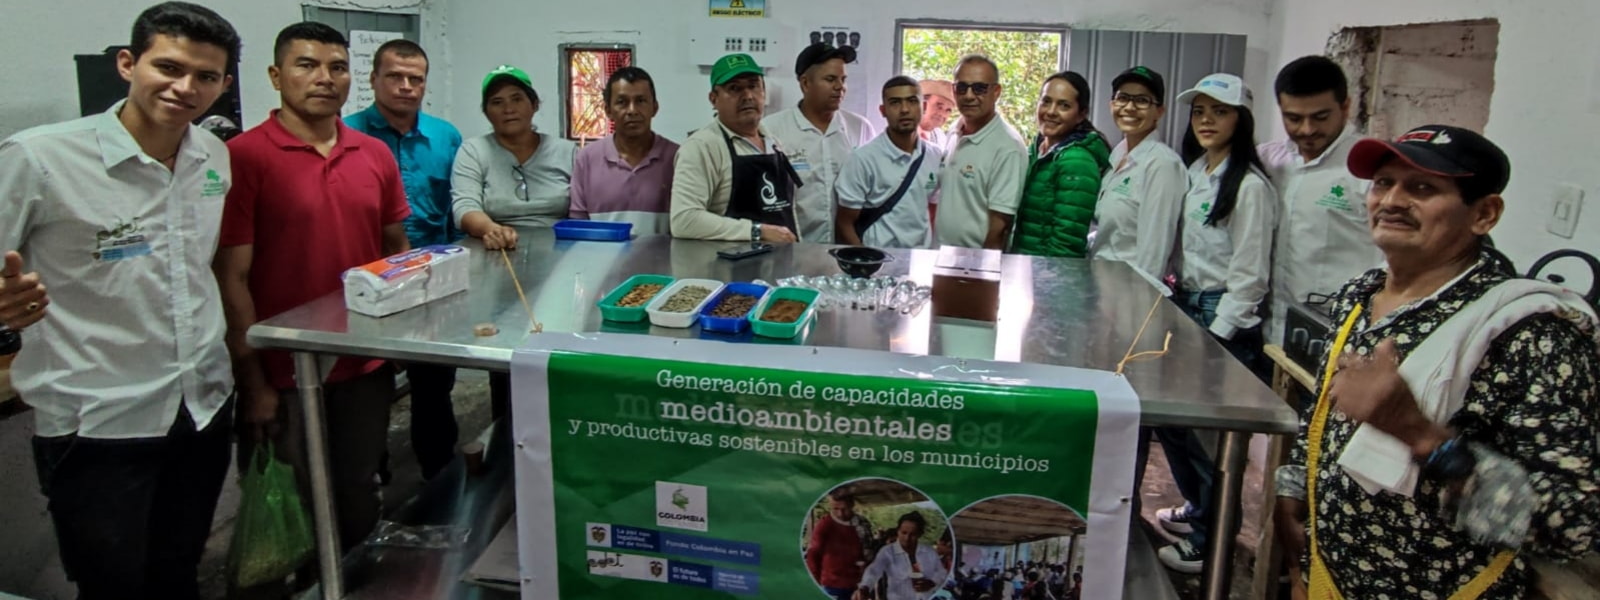 Proyecto Generación de capacidades medioambientales y productos sostenibles en los municipios de Ataco, Chaparral, Planadas y Rioblanco, Análisis sensorial del café, Capacitación: Laboratorio